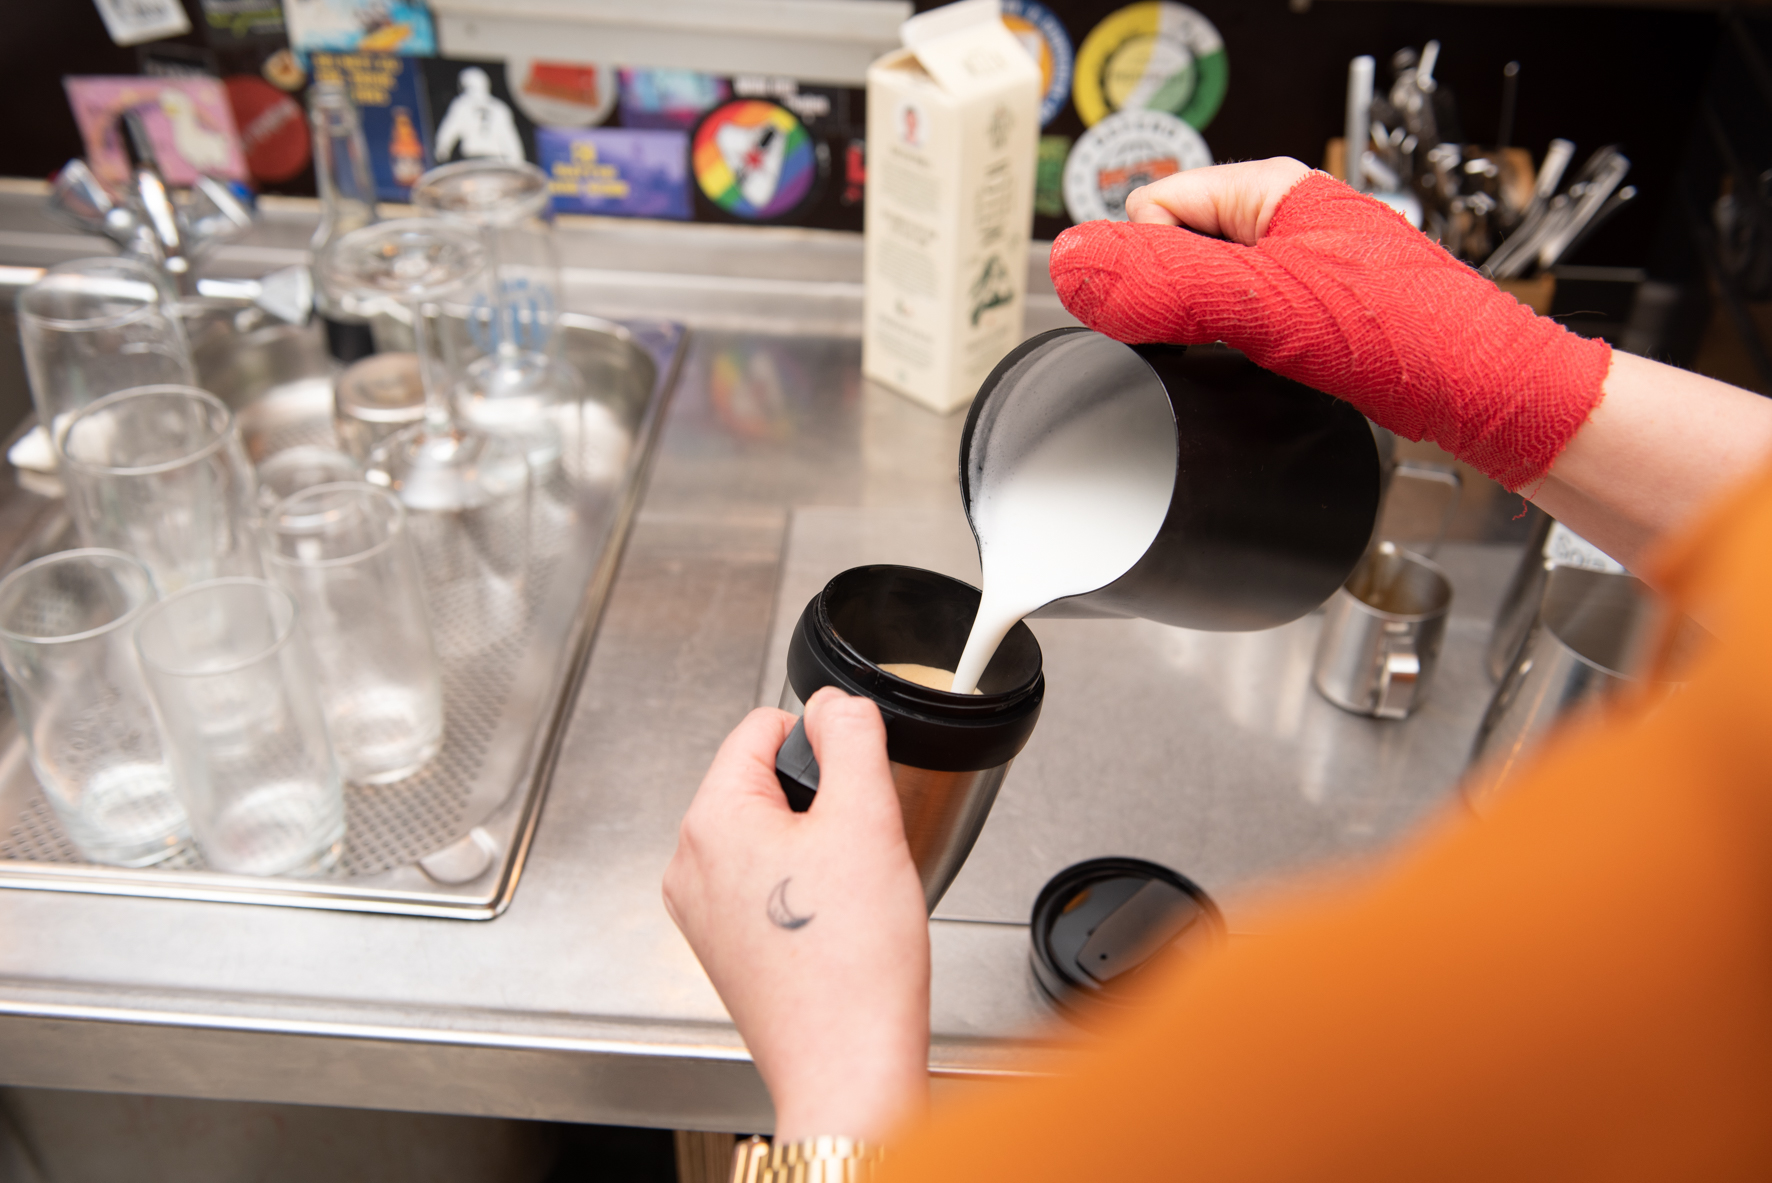 Gastronom füllt Kaffee in kundeneigenen Becher